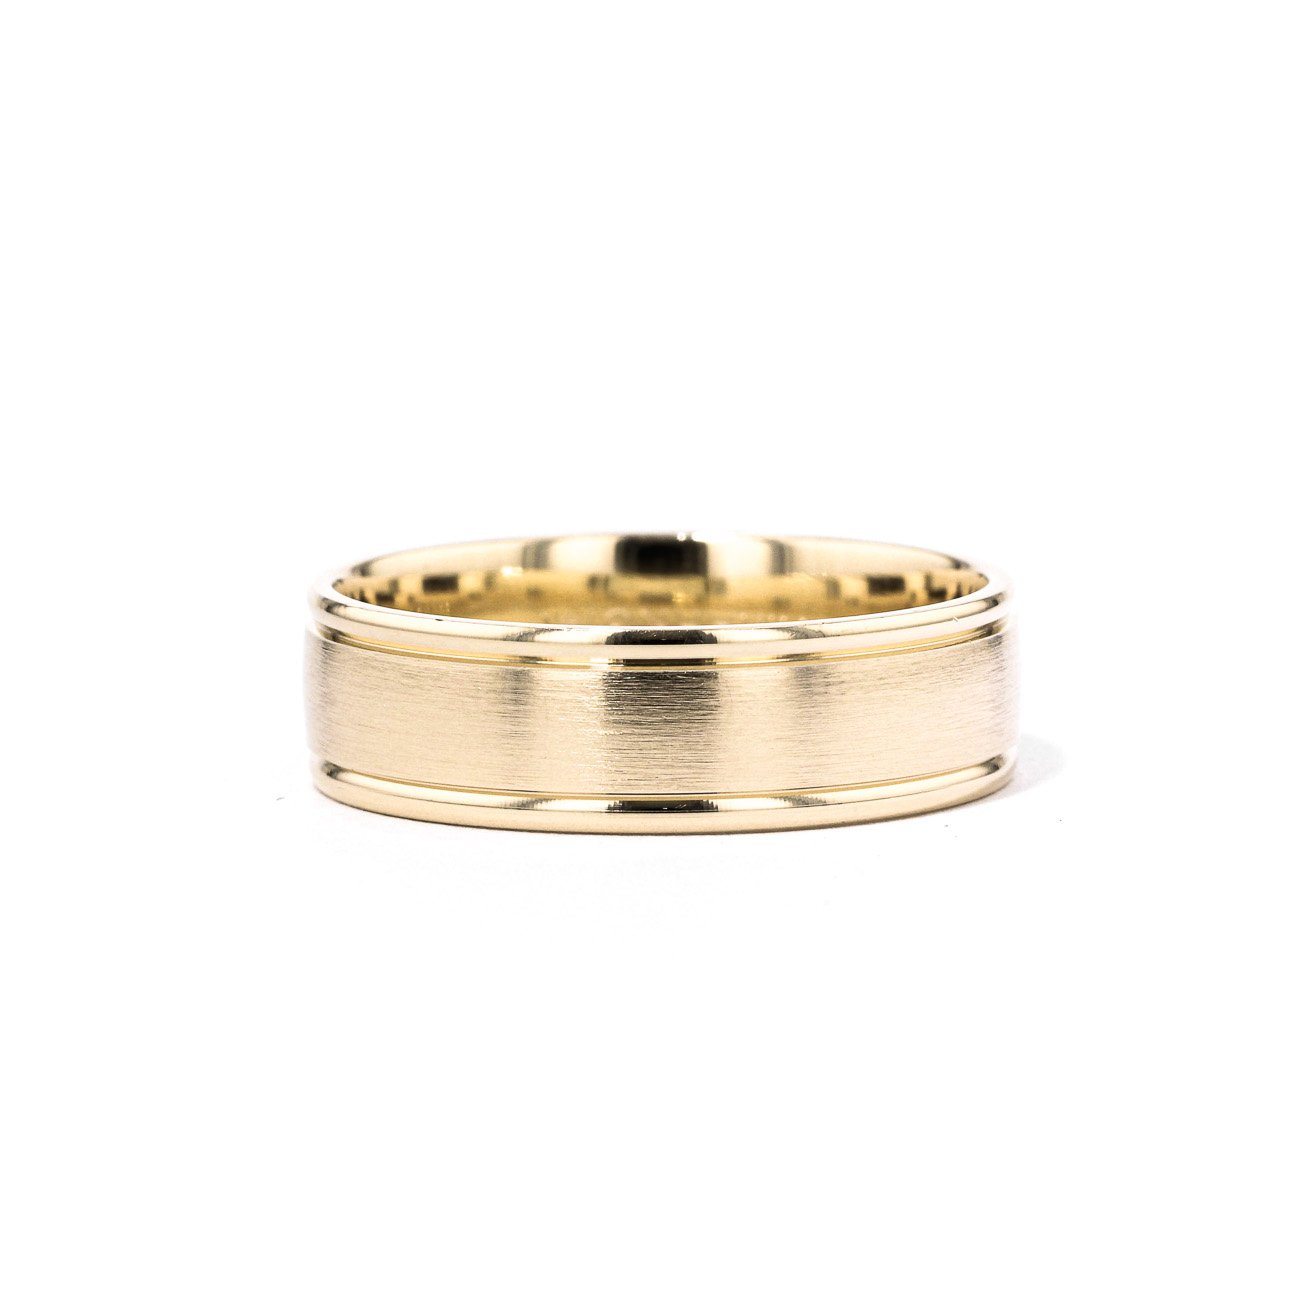 Satin Finish Polish Edge 6.5mm Gold Ring Ring Princess Bride Diamonds 6 14K Yellow Gold 